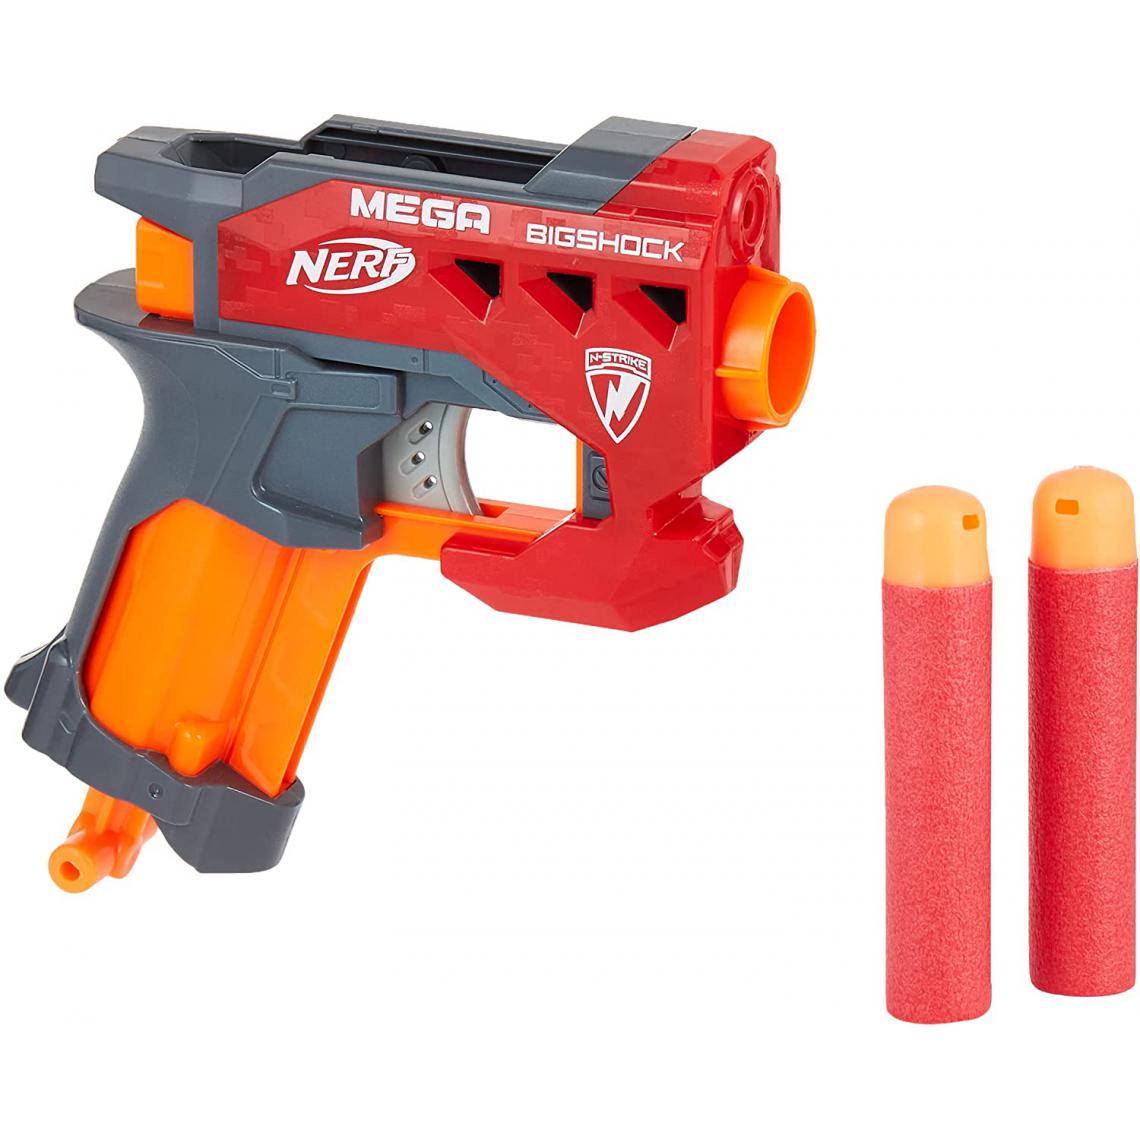 Nerf - pistolet mega élite bigshock rouge noir orange - Jeux d'adresse